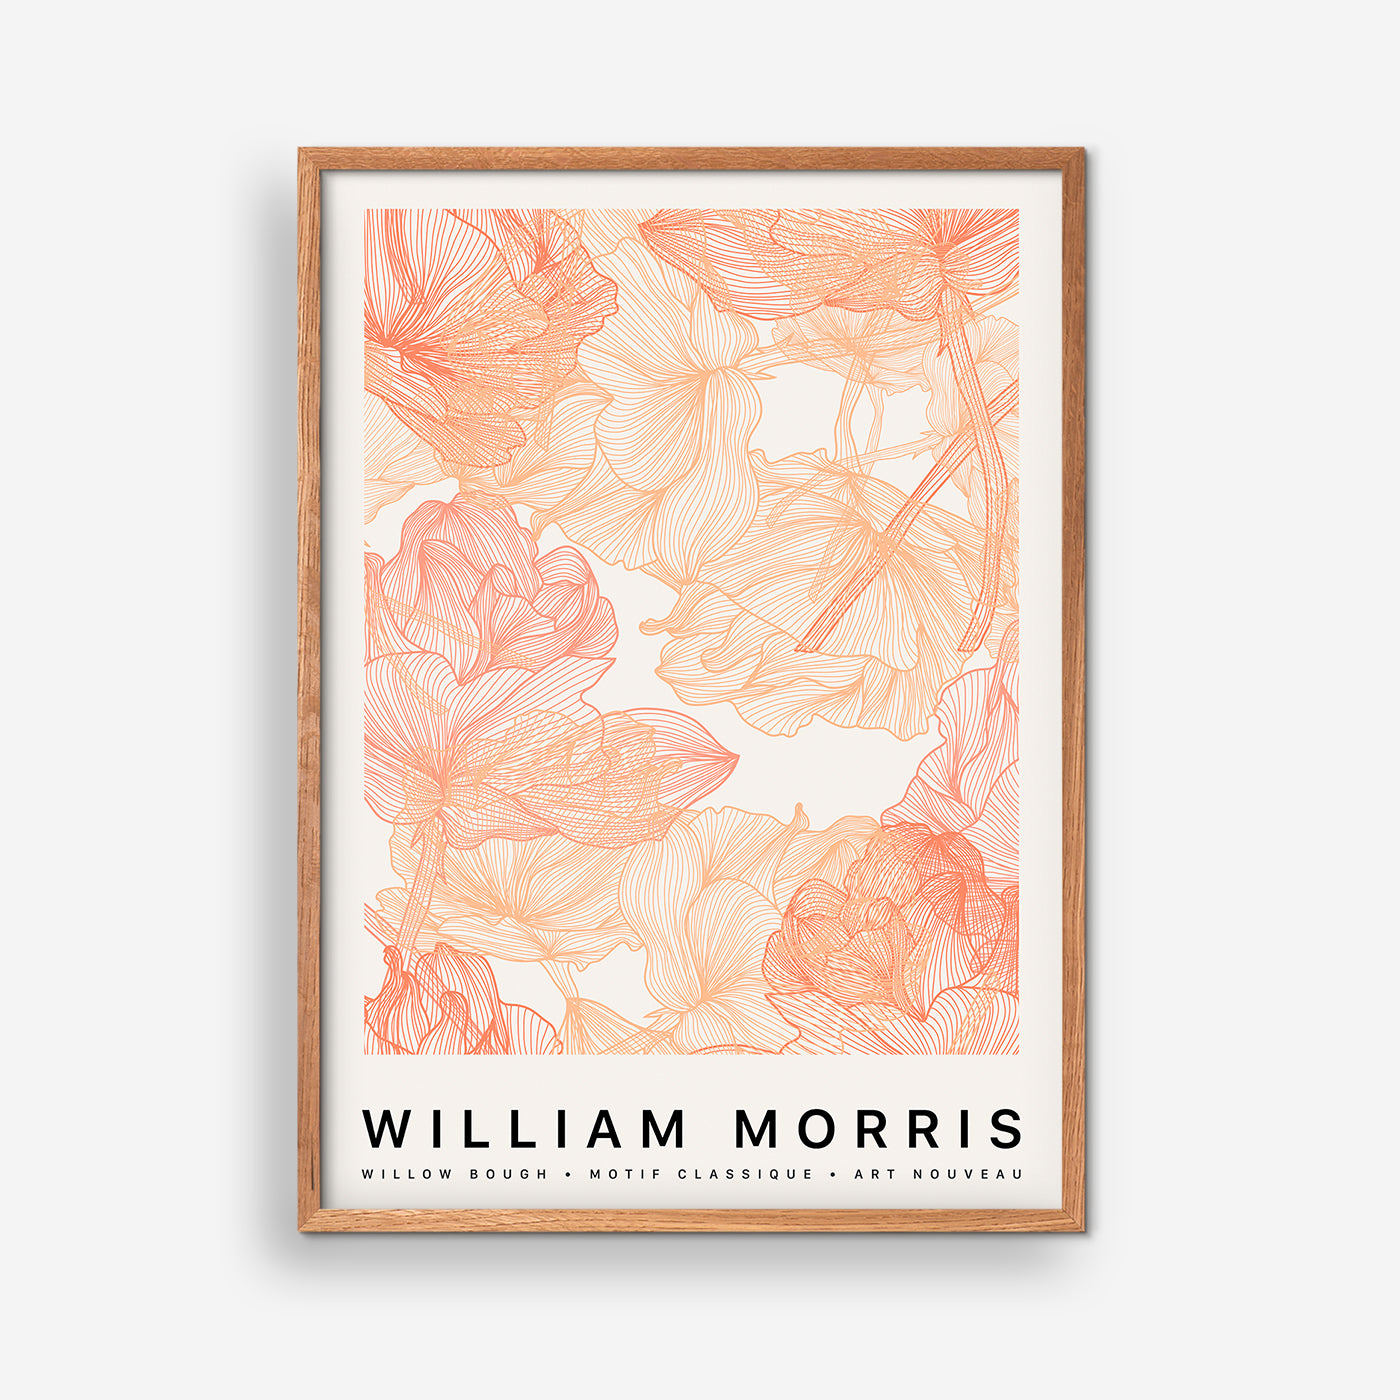 Willow Bough – William Morris